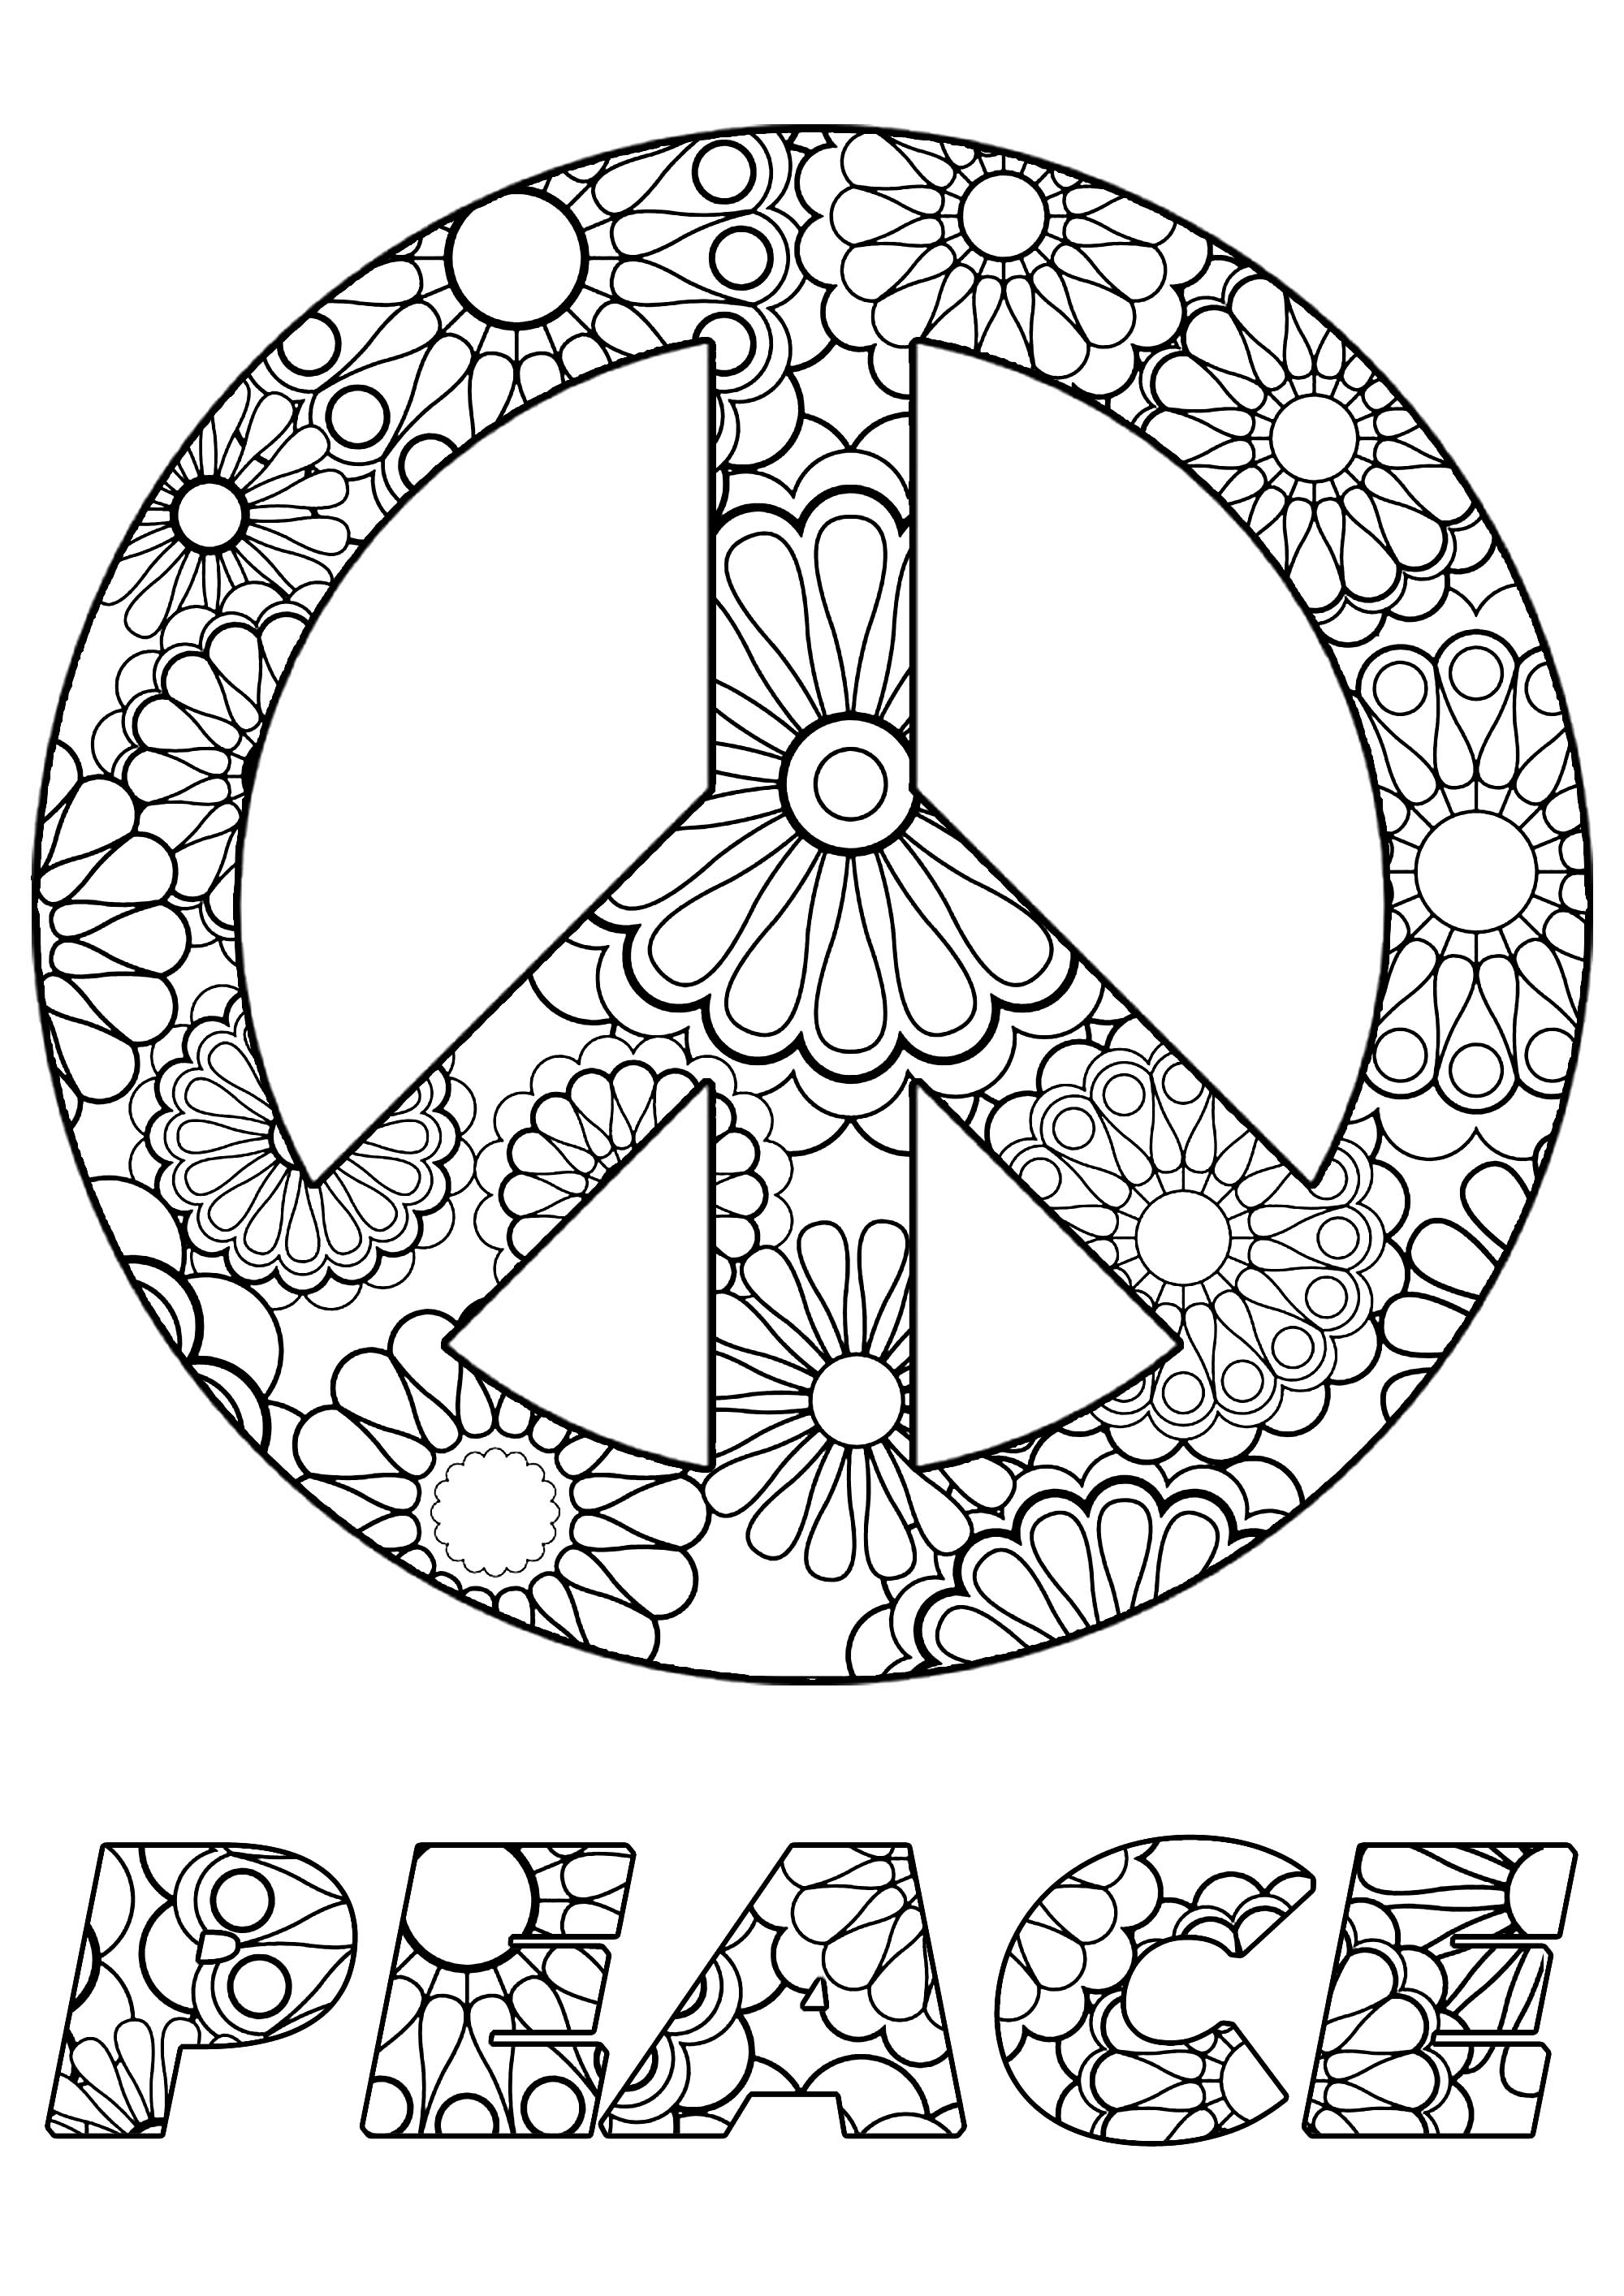   Symbole de paix avec des fleurs 